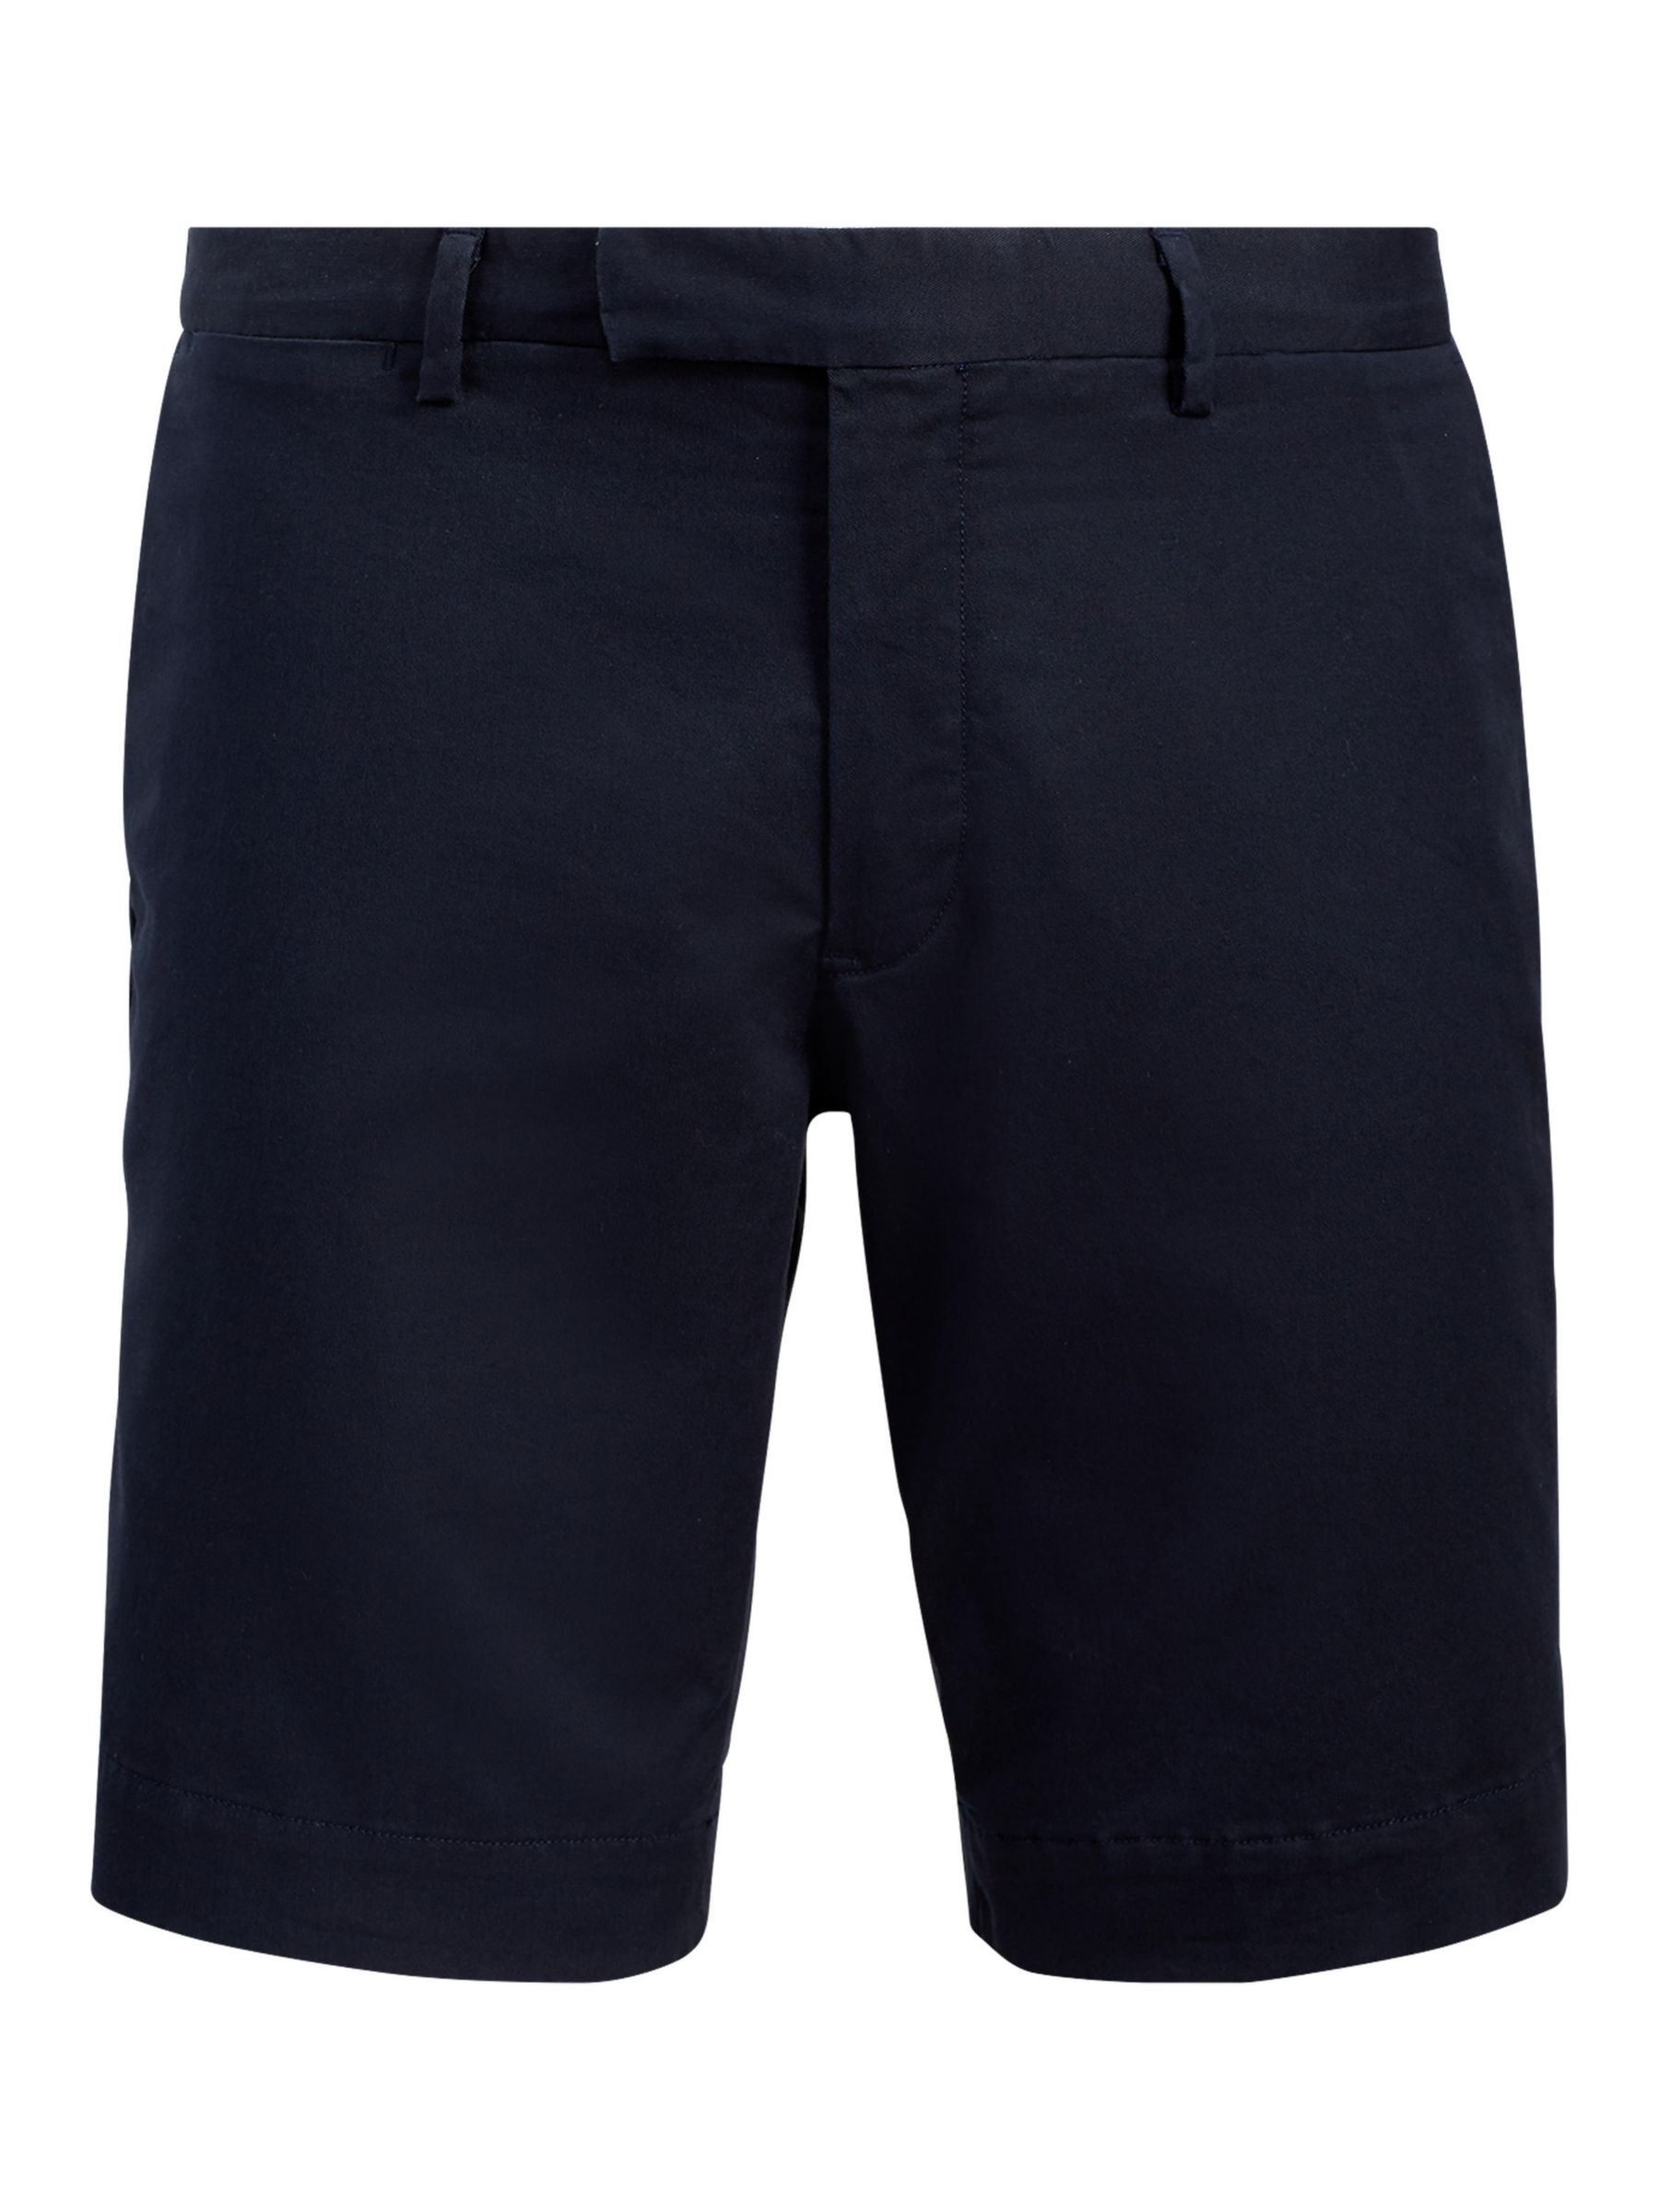 Polo Ralph Lauren Slim Chino Shorts, Aviator Navy, 32R